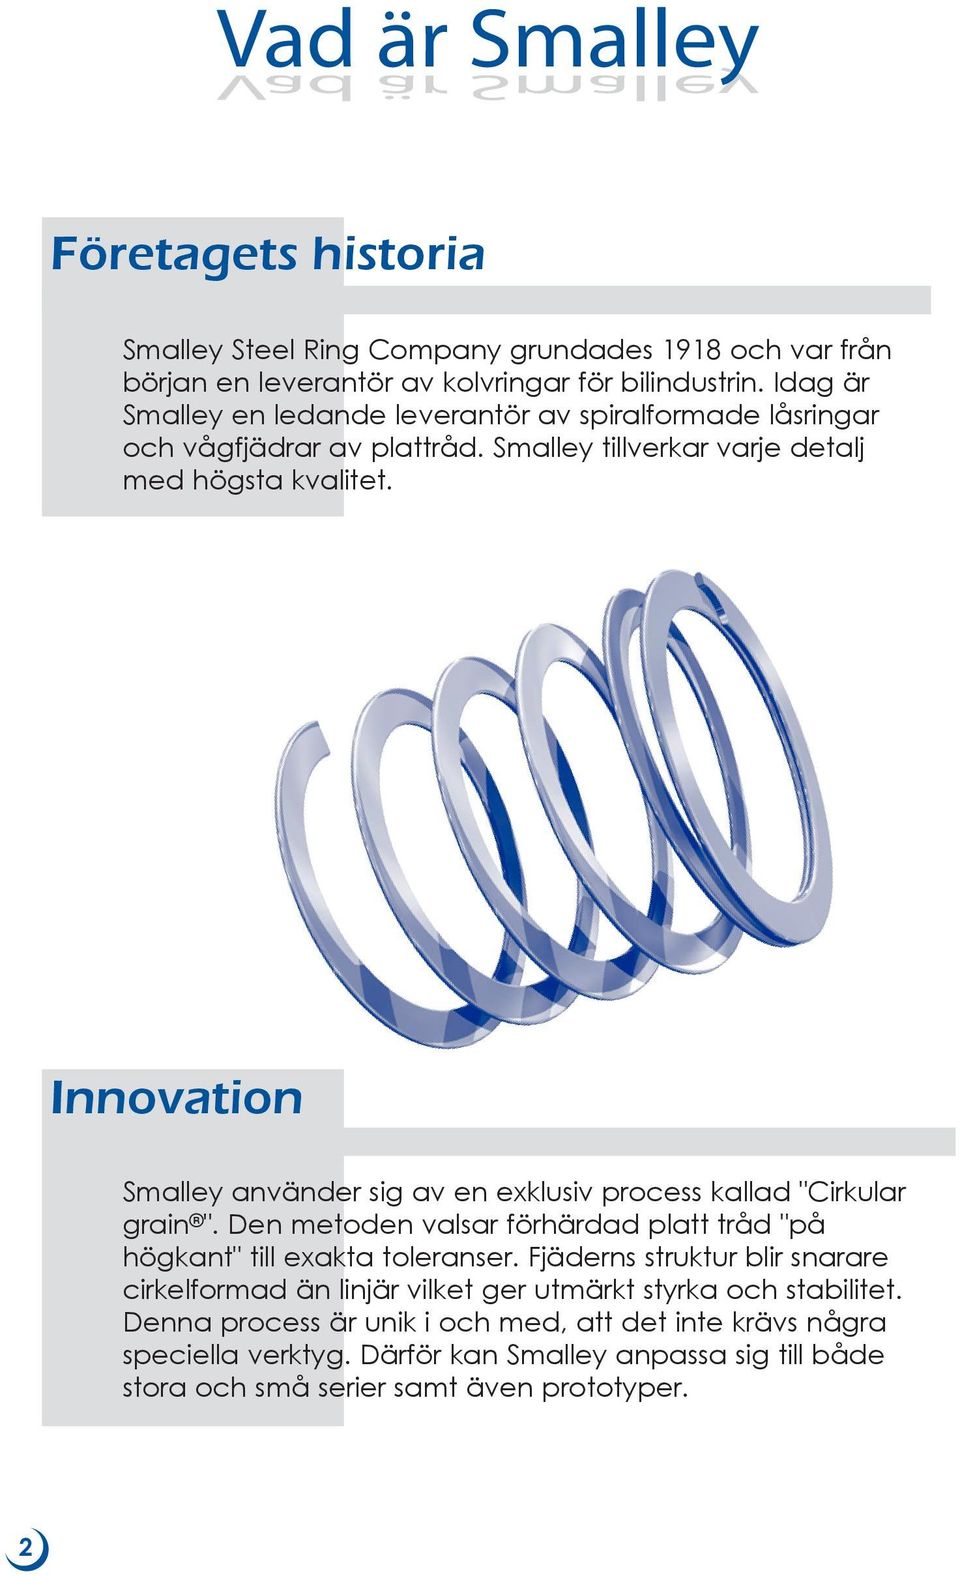 Innovation Smalley använder sig av en exklusiv process kallad "Cirkular grain ". Den metoden valsar förhärdad platt tråd "på högkant" till exakta toleranser.